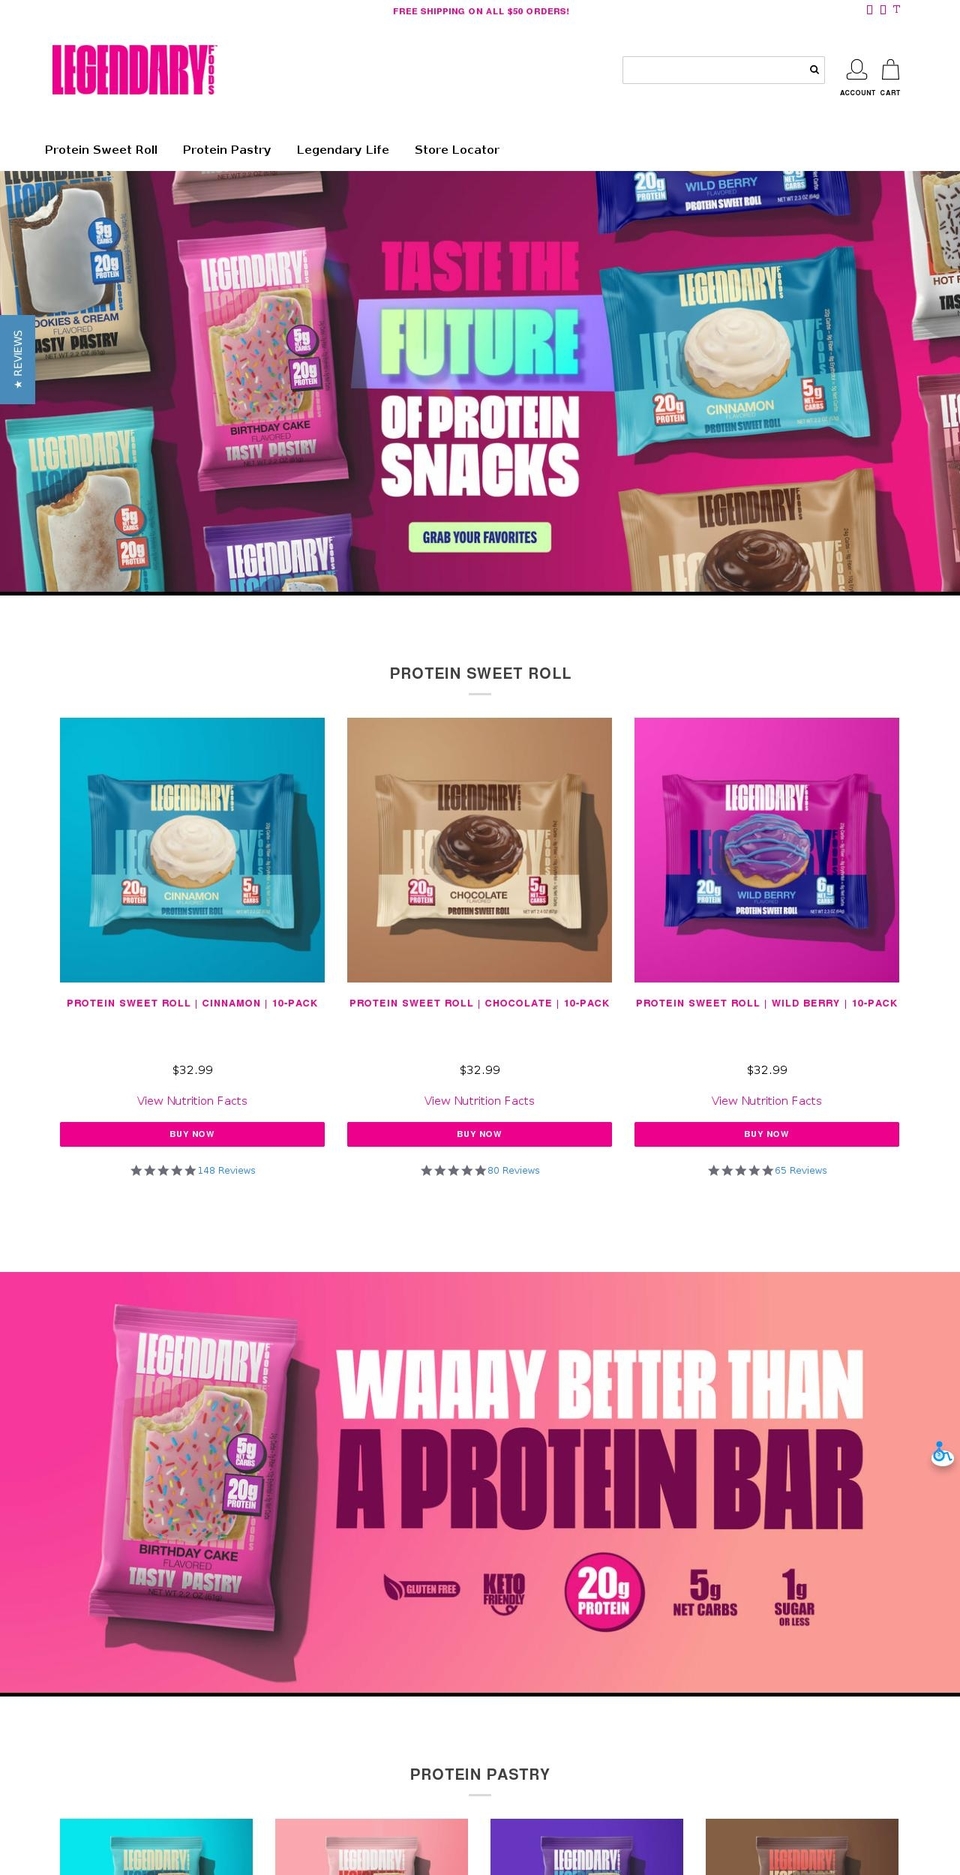 Legend Shopify theme site example eatlegendary.com